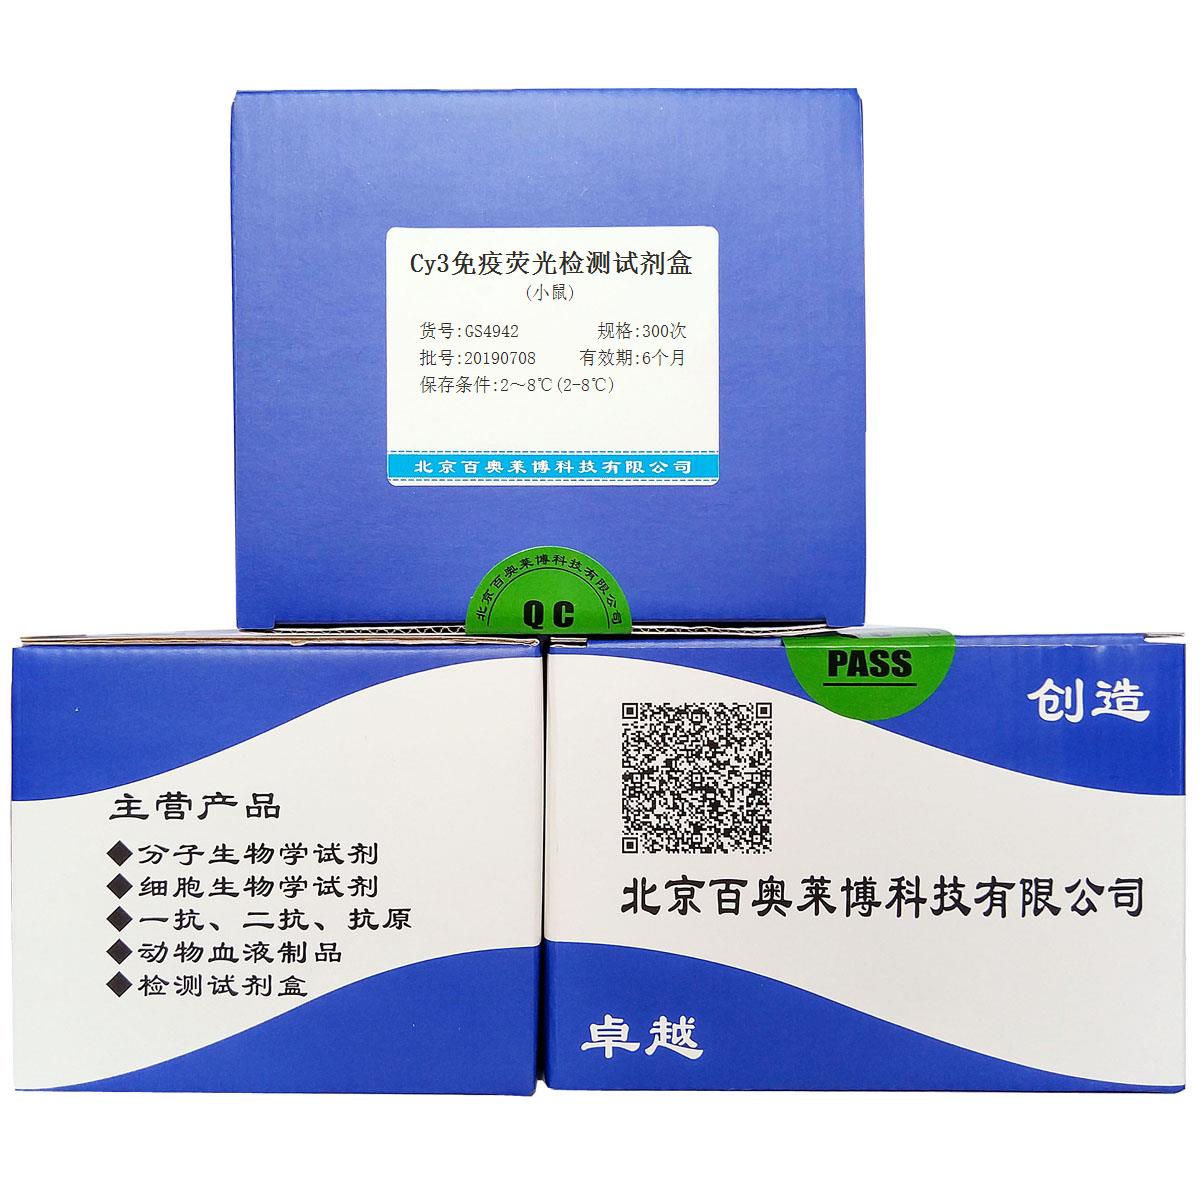 Cy3免疫荧光检测试剂盒(小鼠)优惠促销